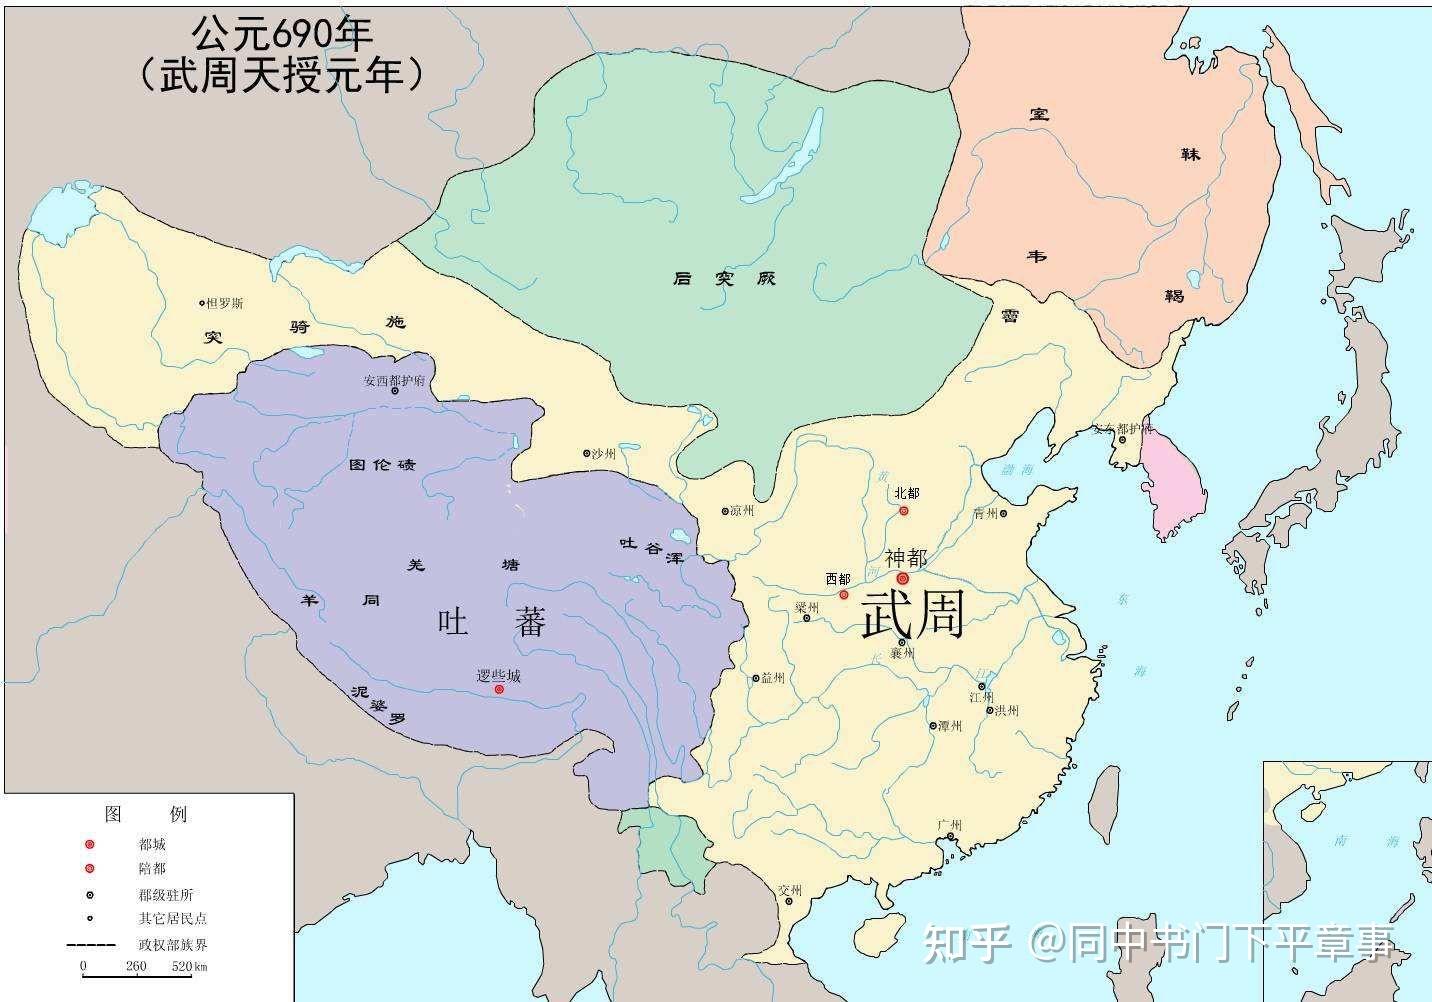 建立的朝代——大齐(880年到884年)3,闯王李自成称帝建立的 大顺 王朝